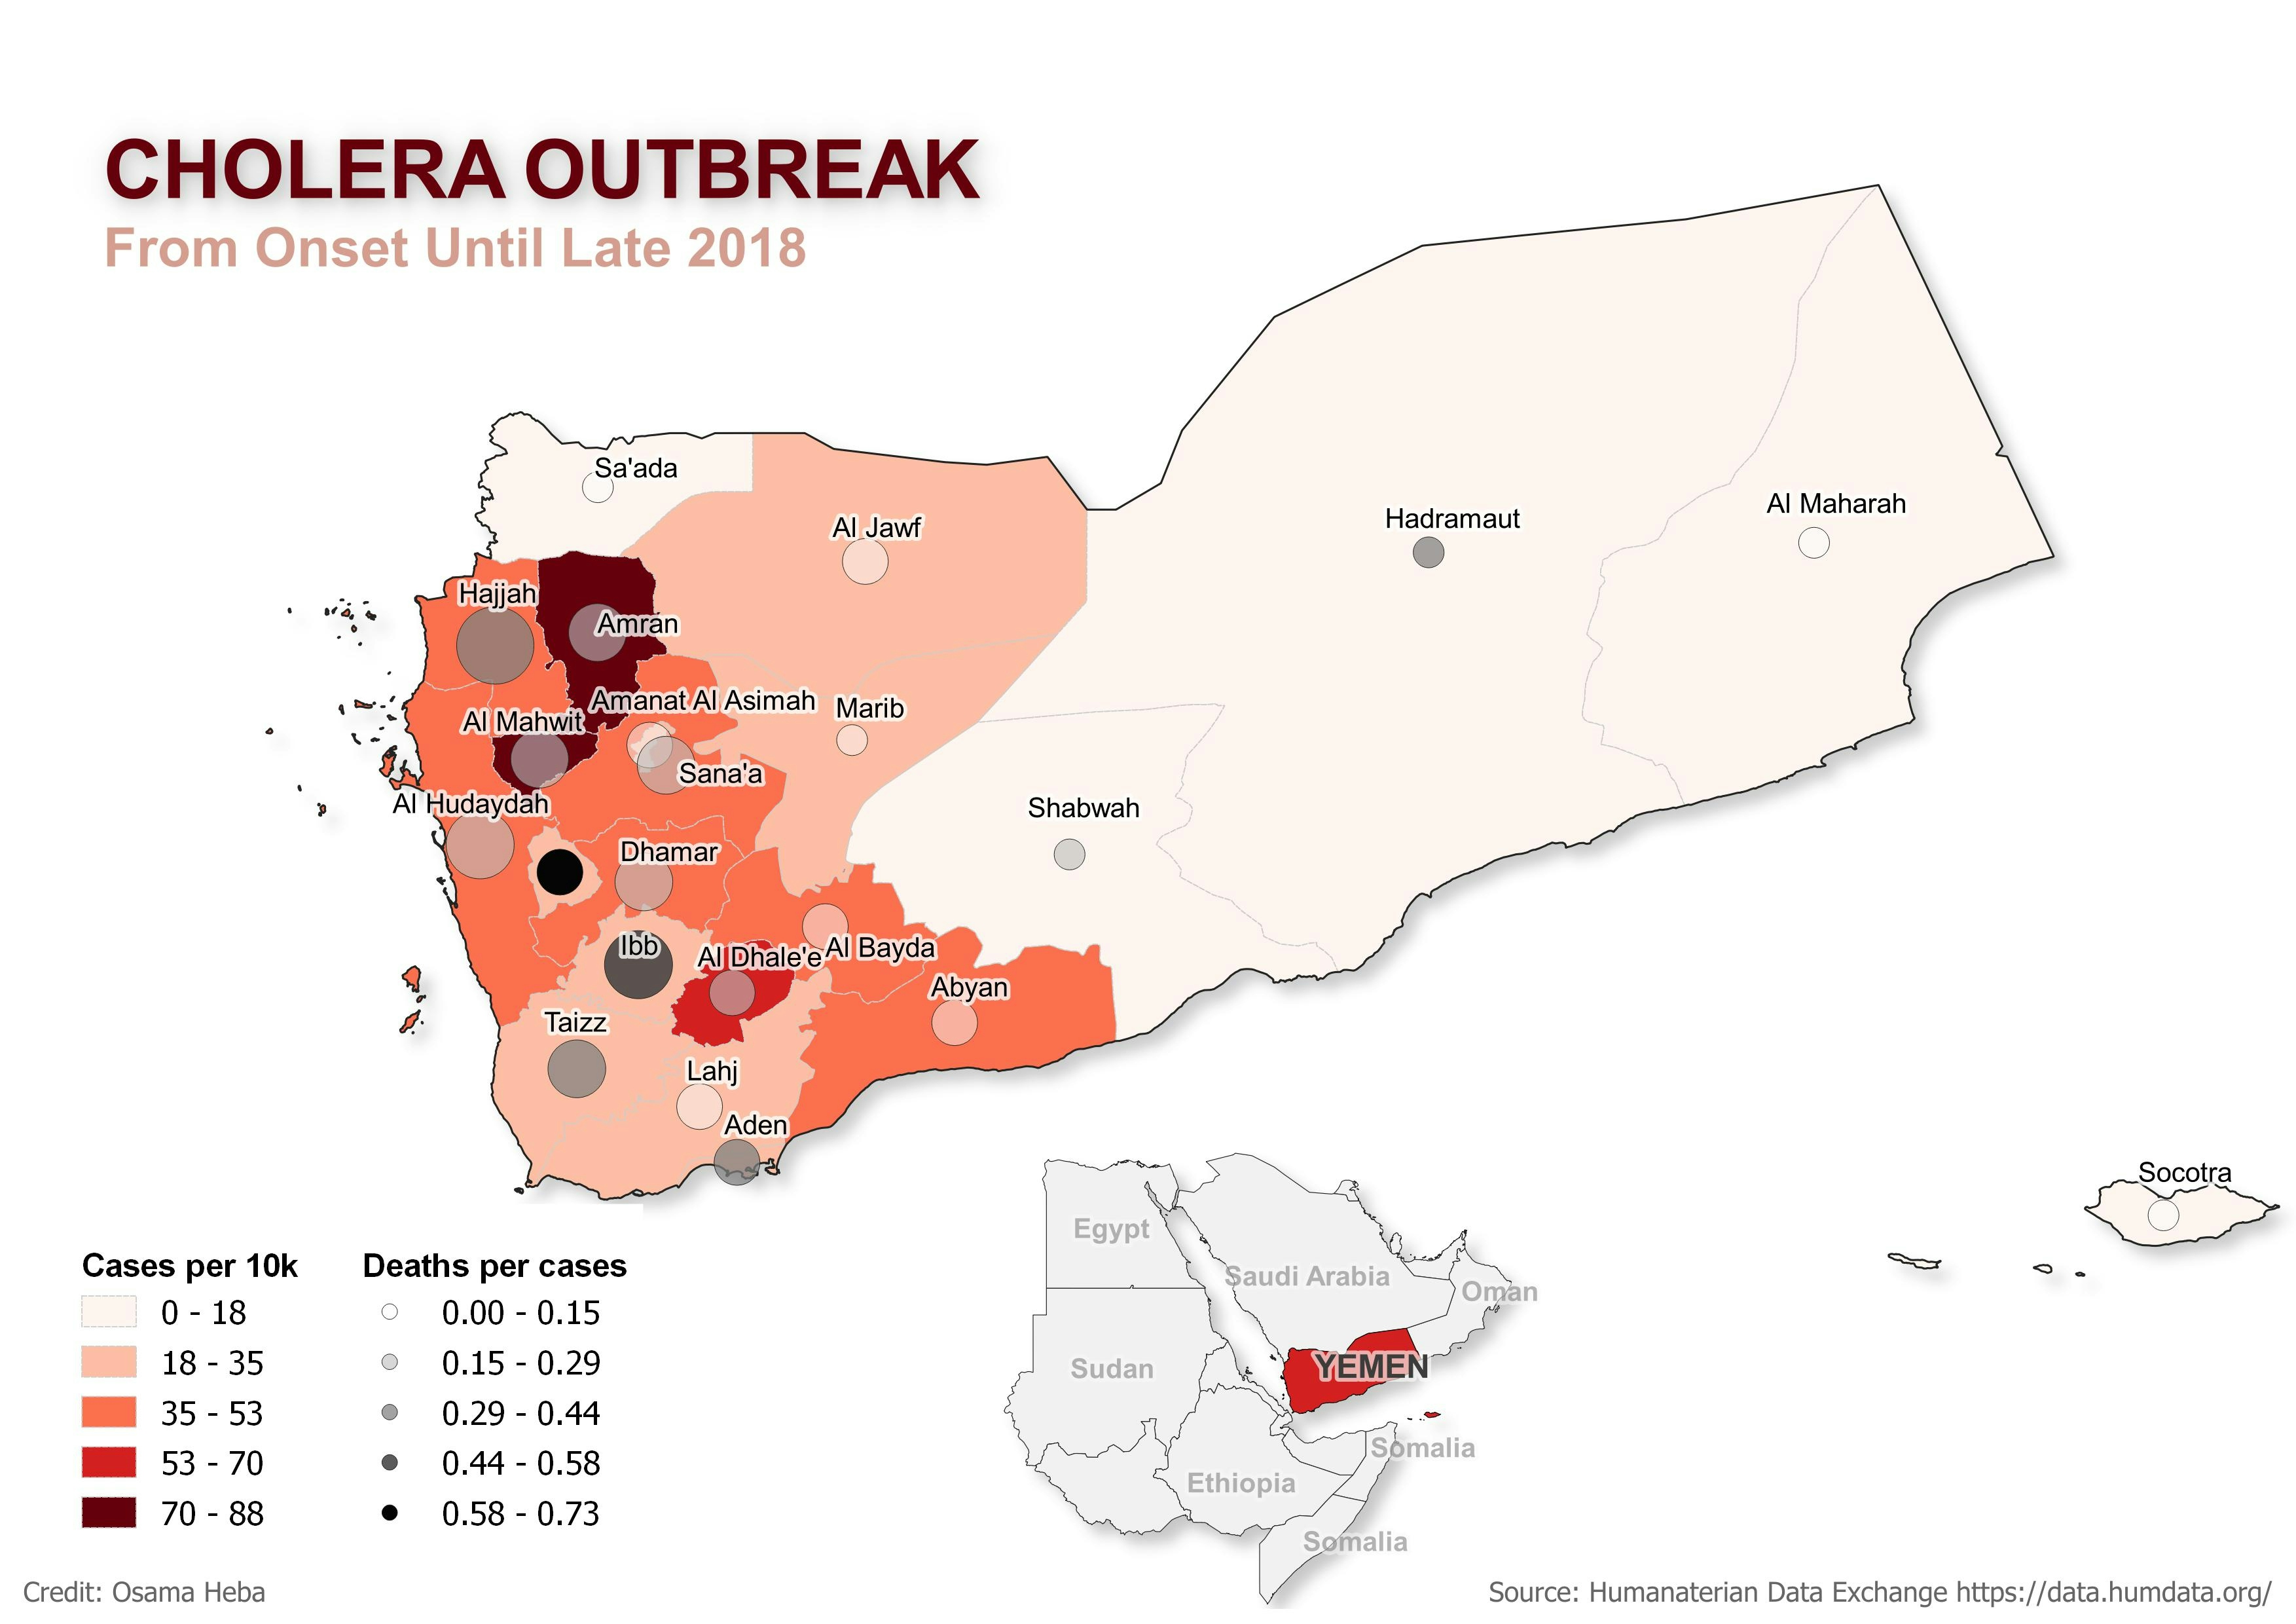 Cholera Outbreak in Yemen 2016-2018